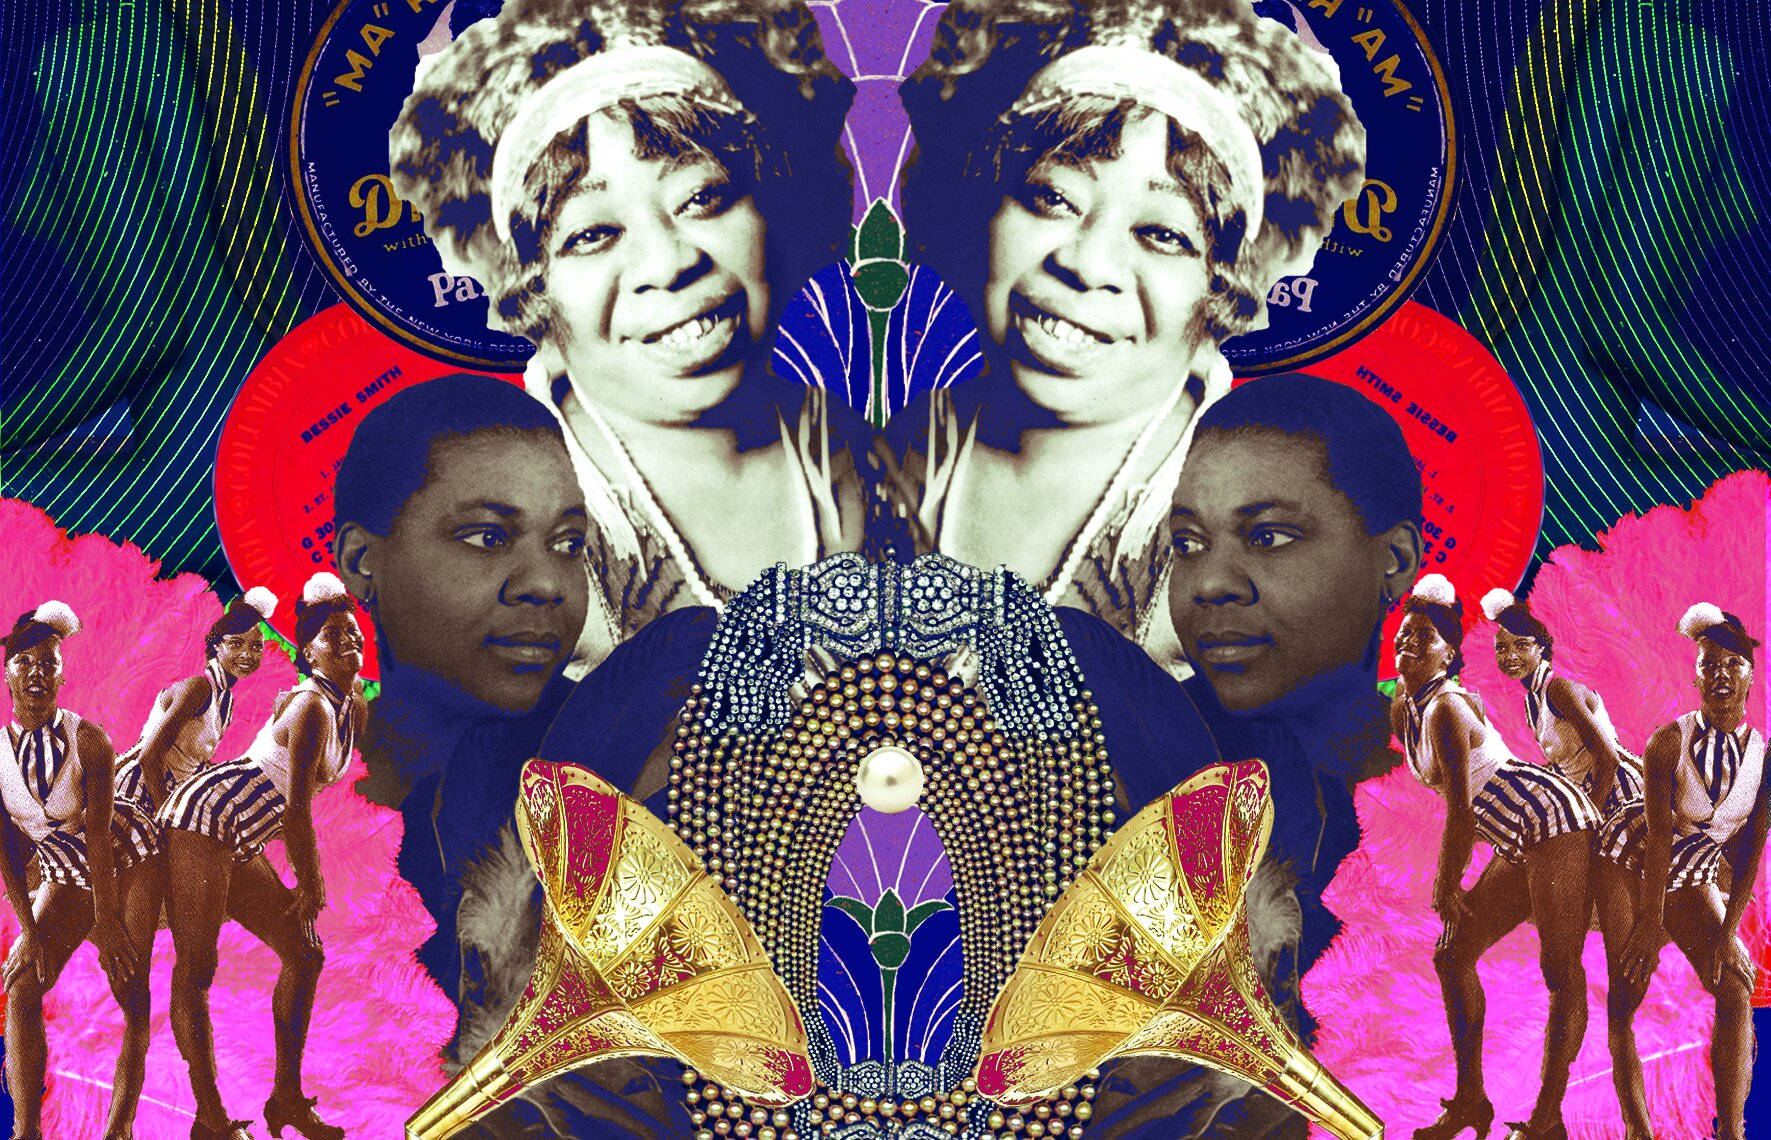 Bessie Smith Blues Singer Graphic Art Wallpaper